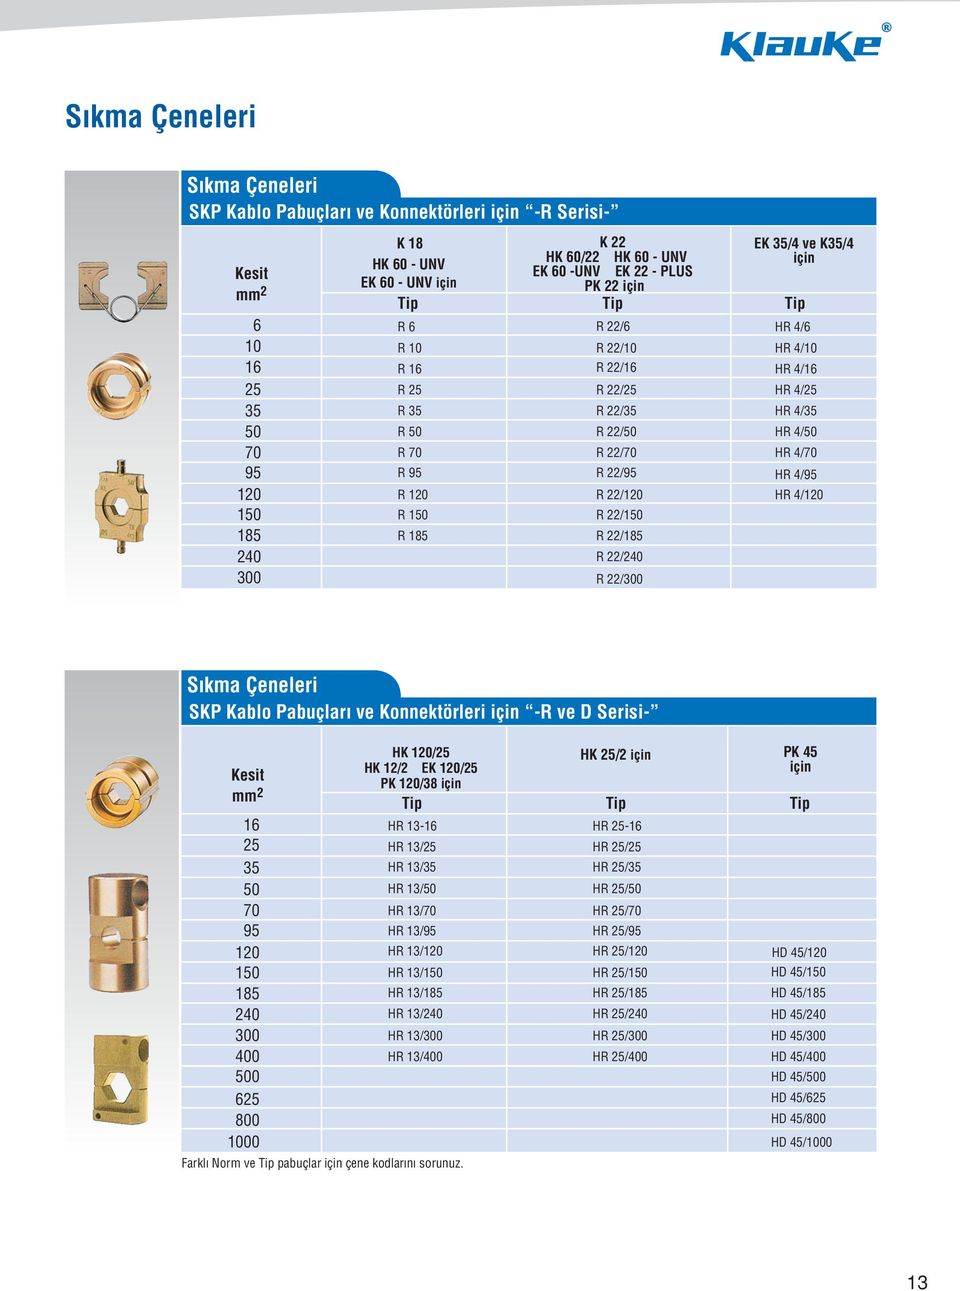 Çeneleri SKP Kablo Pabuçlar ve Konnektörleri için R ve D Serisi Kesit mm 5 35 70 95 0 85 40 300 400 0 5 800 0 HK 0/5 HK / EK 0/5 PK 0/38 için Tip HR 3 HR 3/5 HR 3/35 HR 3/ HR 3/70 HR 3/95 HR 3/0 HR